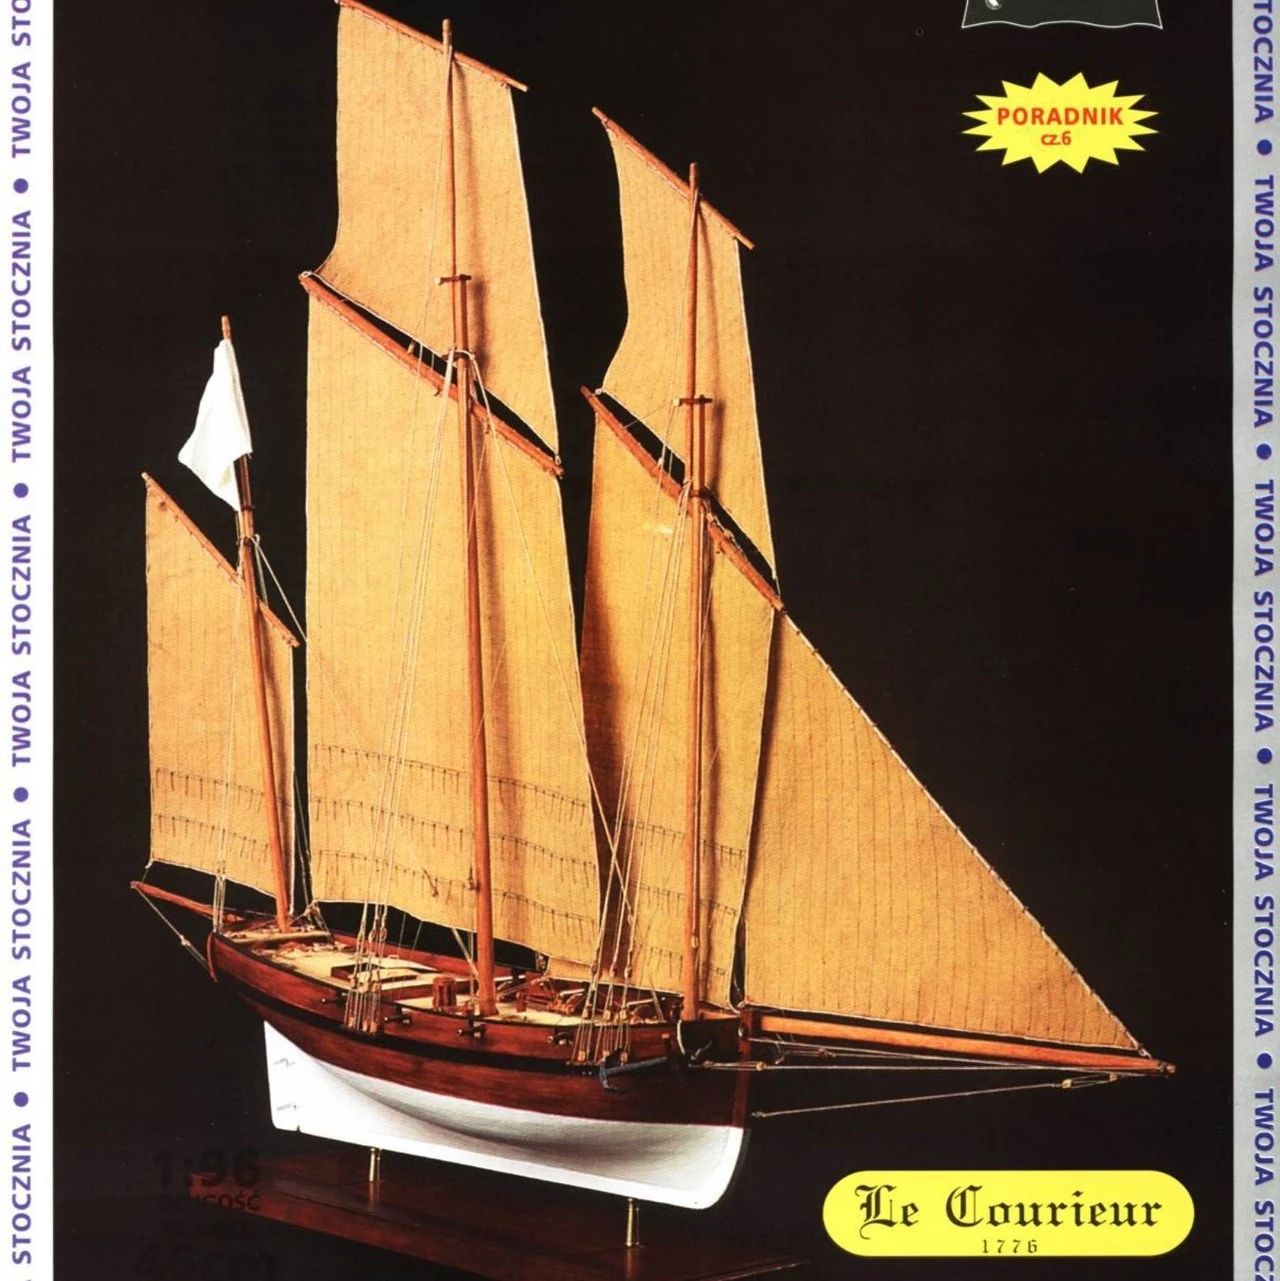 【海洋船舶】法国古帆Le Courieur号船模平面图纸 JPG格式